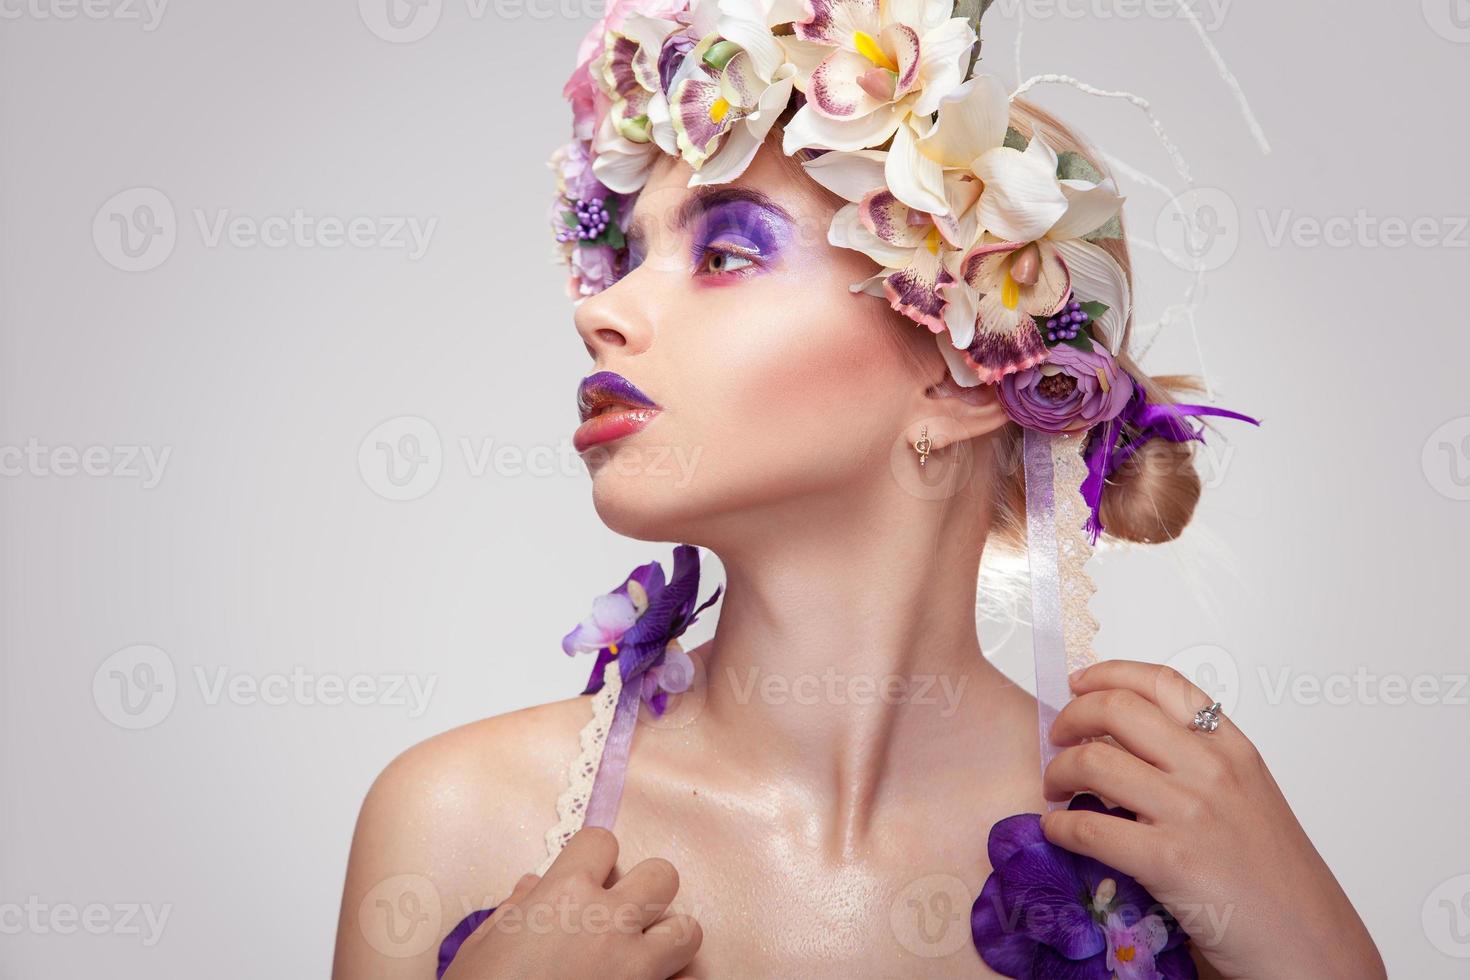 jeune fille avec une couronne sur la tête photo